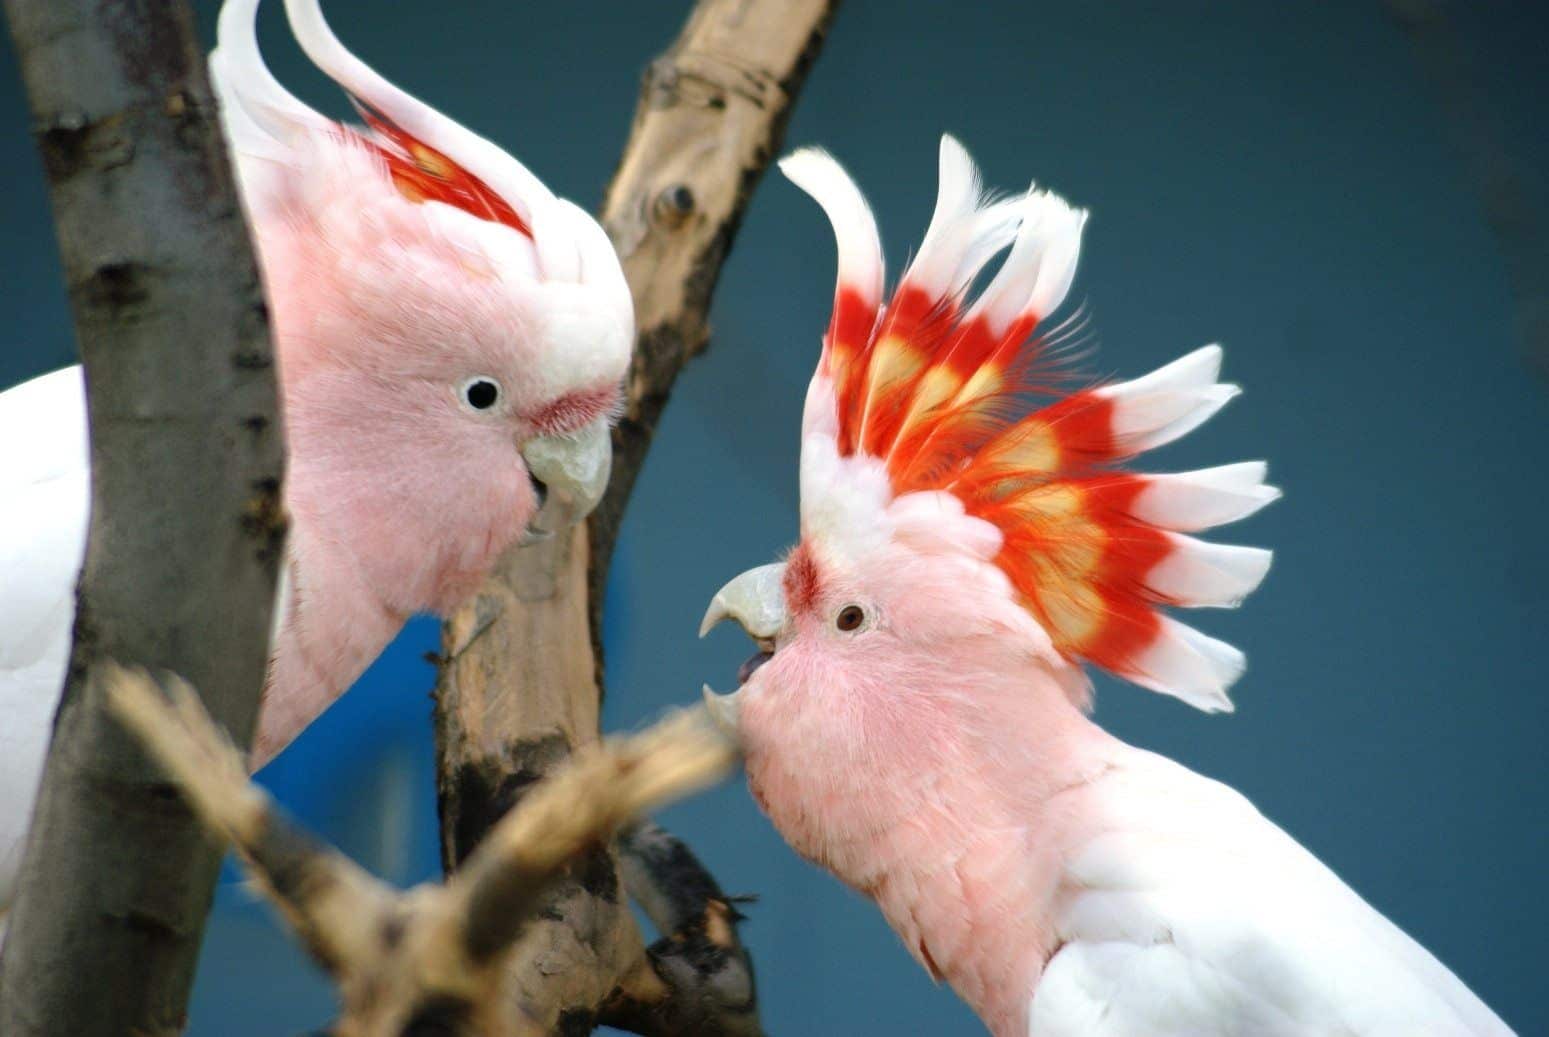 Aves exóticas - 15 espécies diferentonas para você conhecer